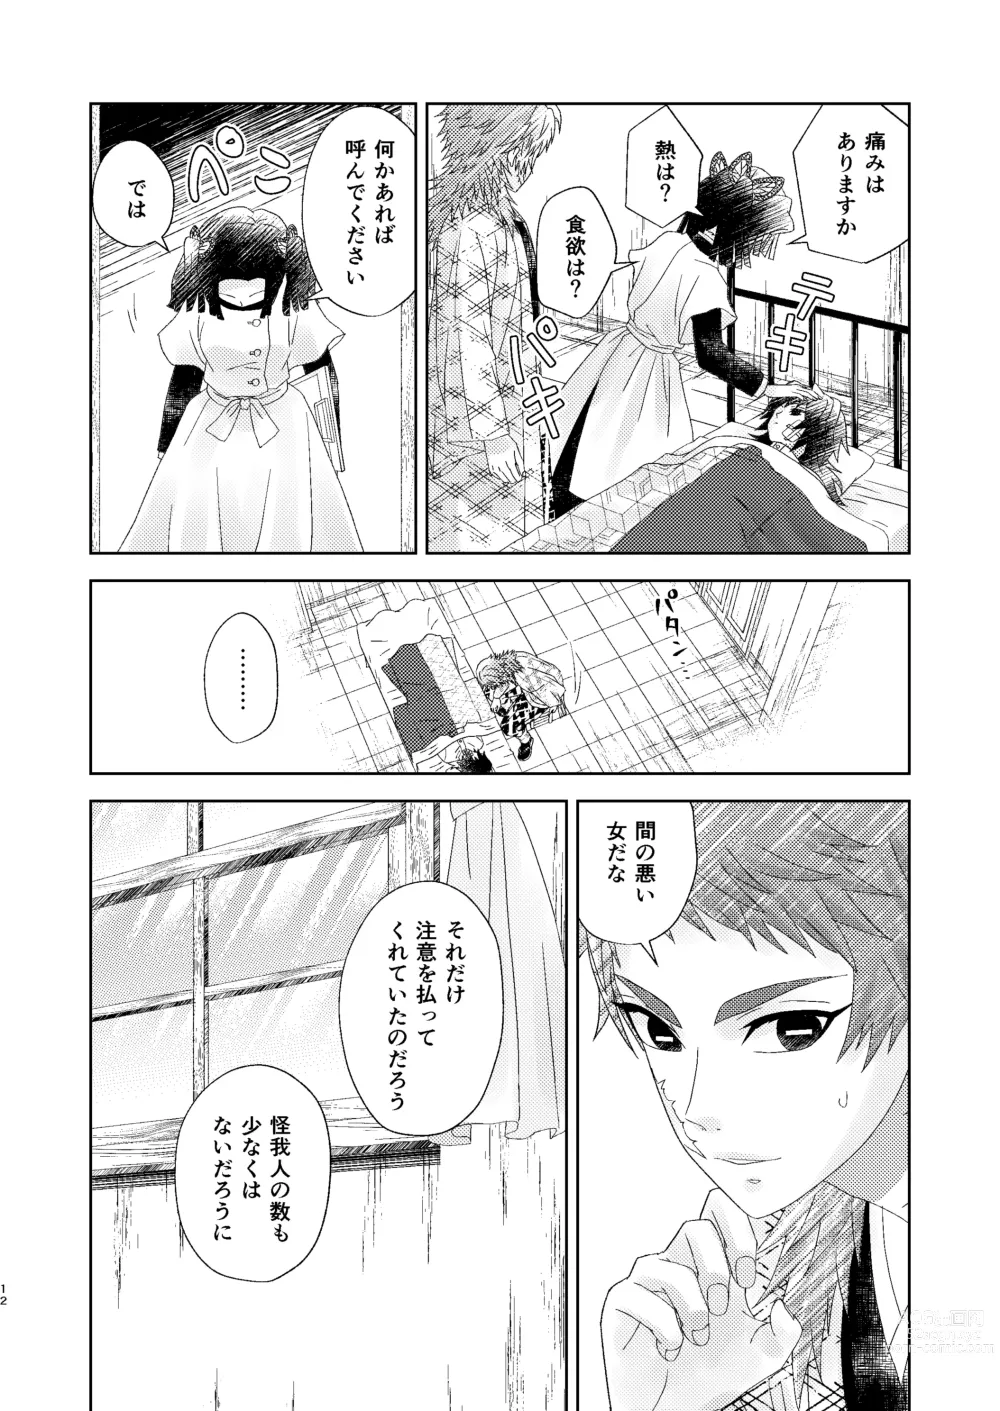 Page 11 of doujinshi Yuurei Kareshi no Koiwazurai